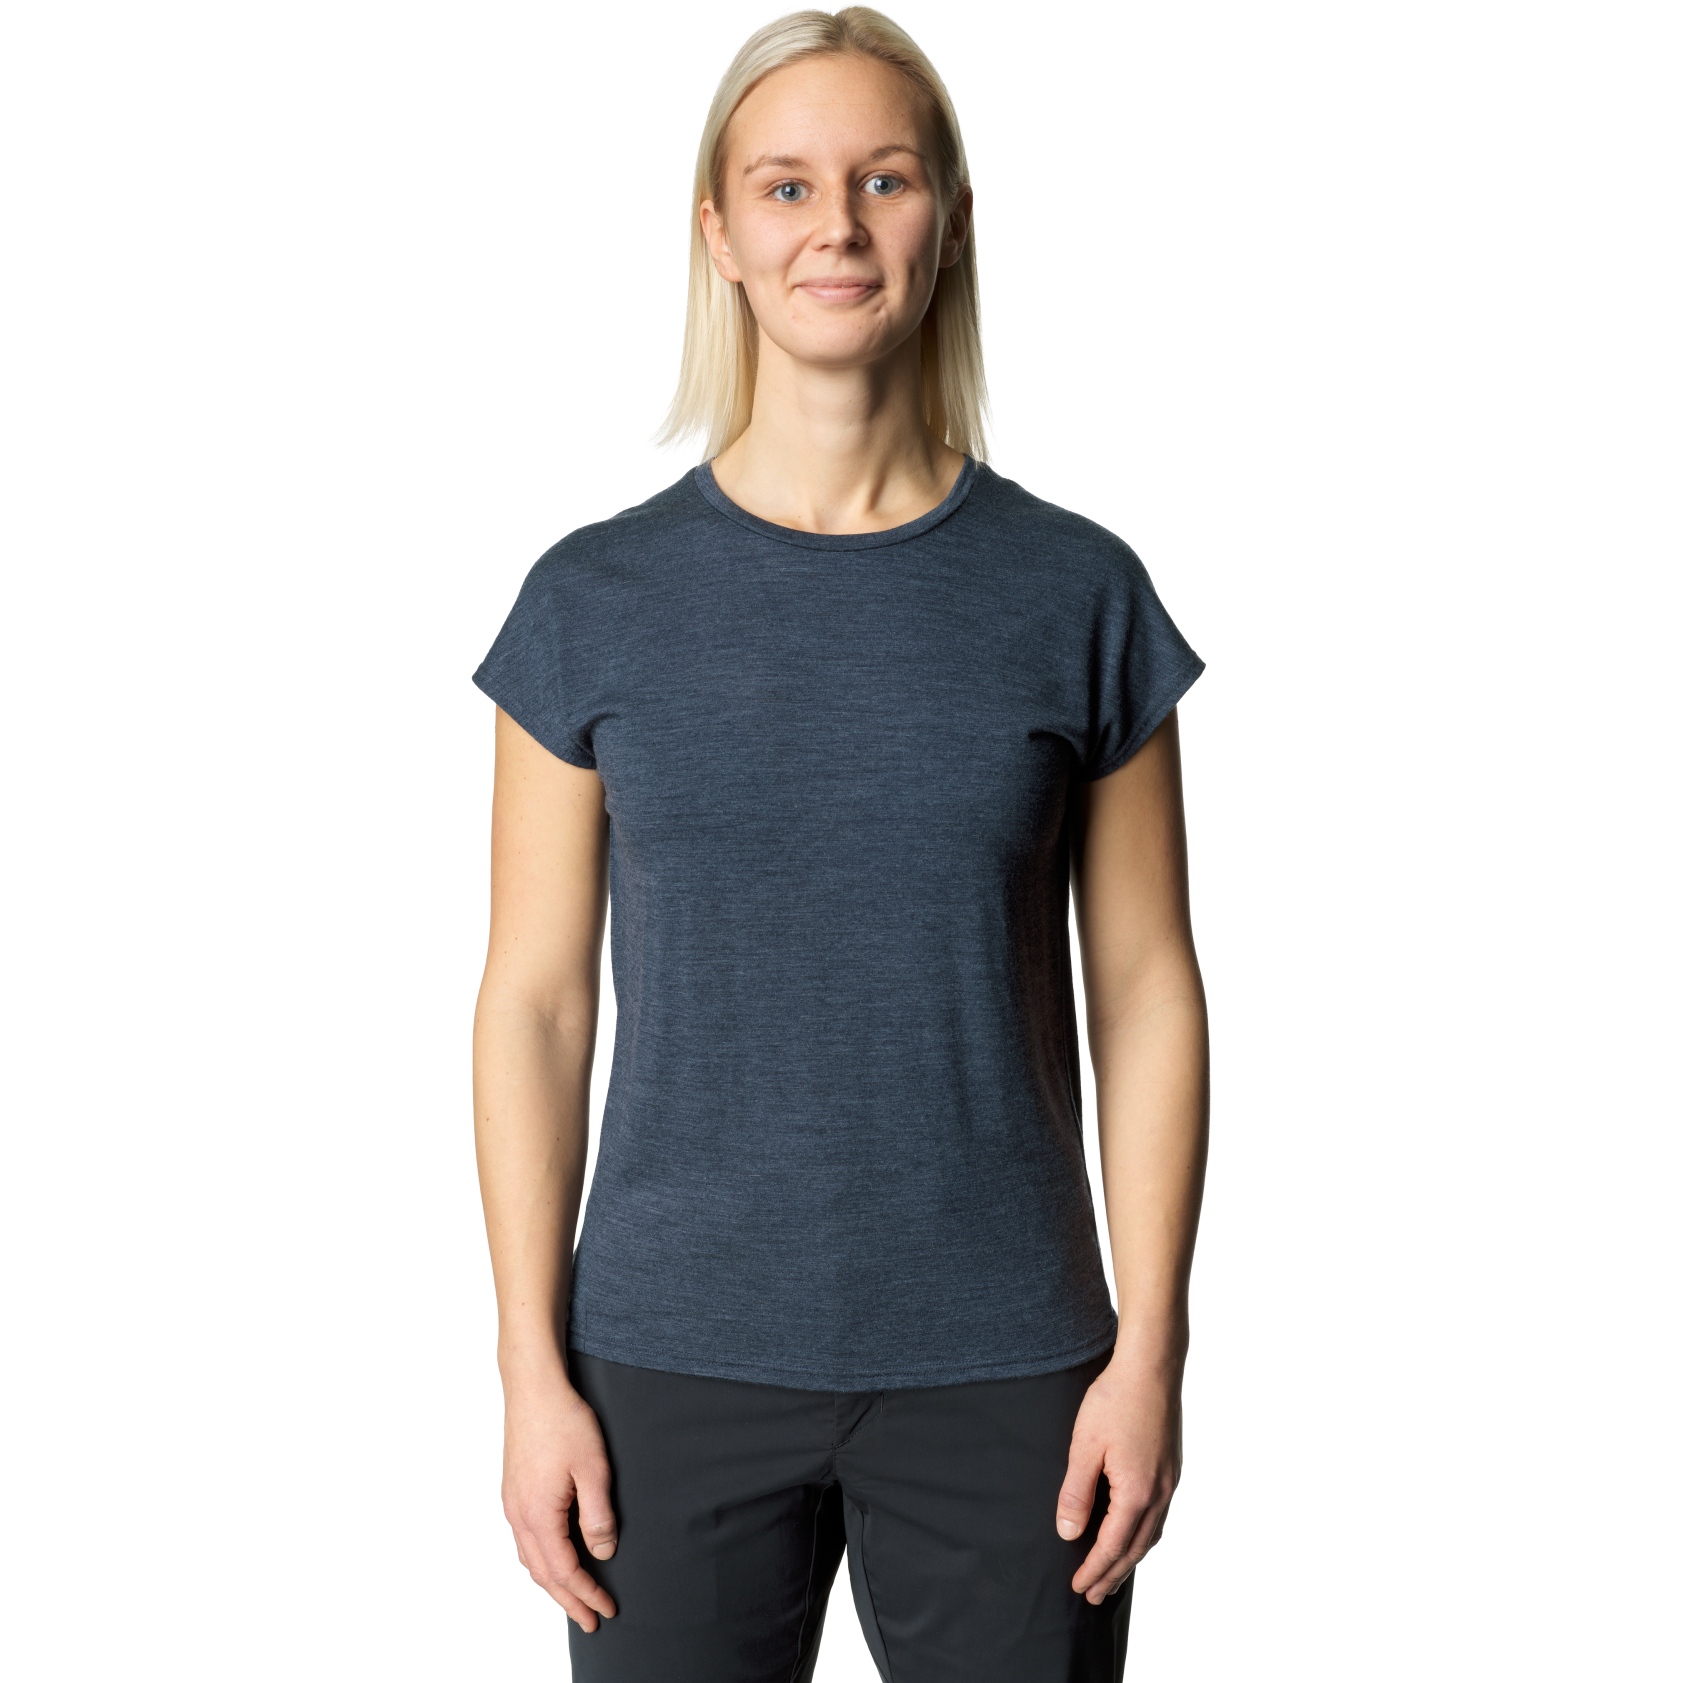 Productfoto van Houdini Activist T-Shirt Dames - Deep Sea Blue